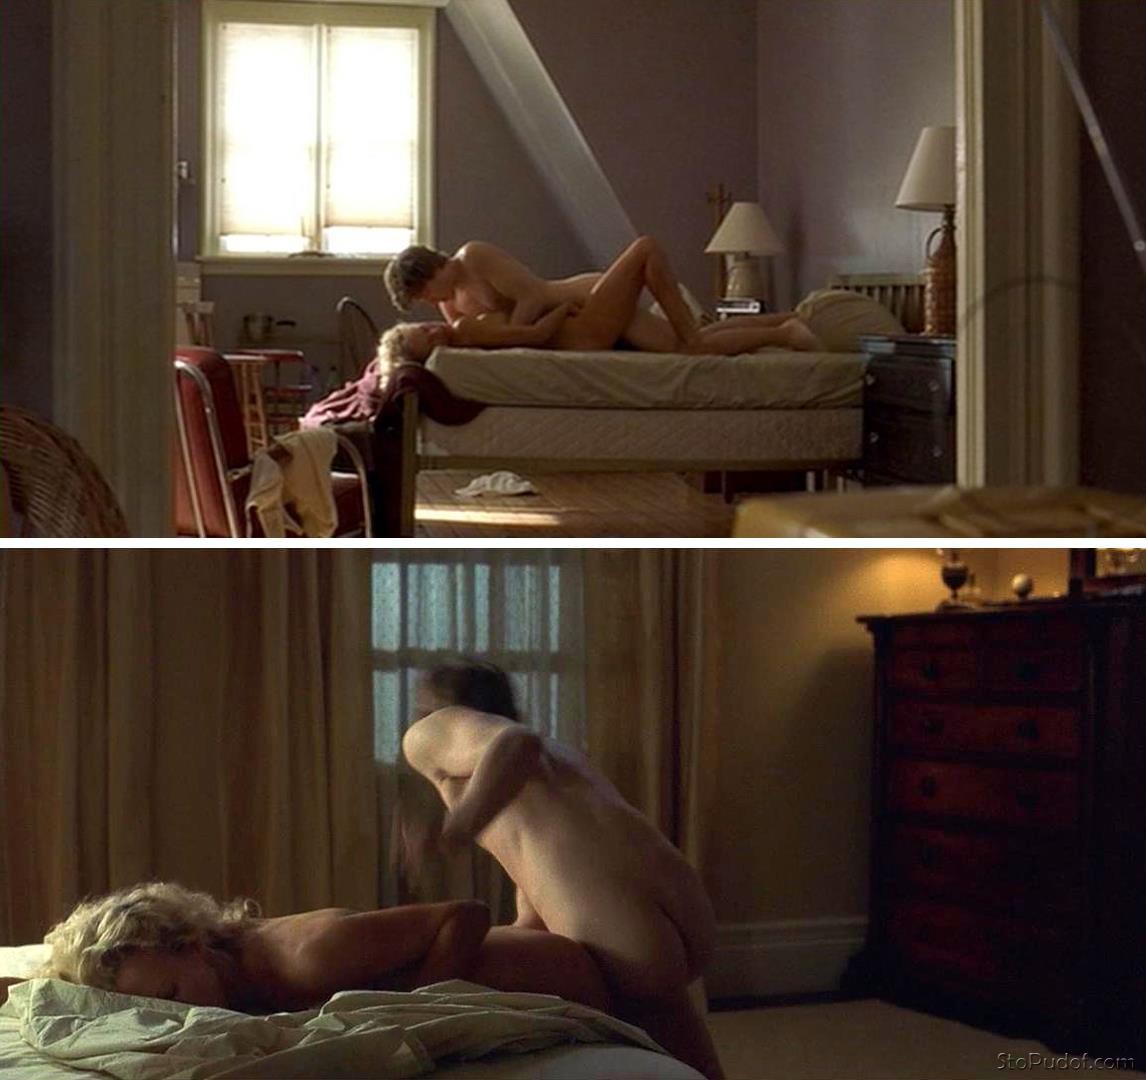 naked photos leaked of Kim Basinger - UkPhotoSafari